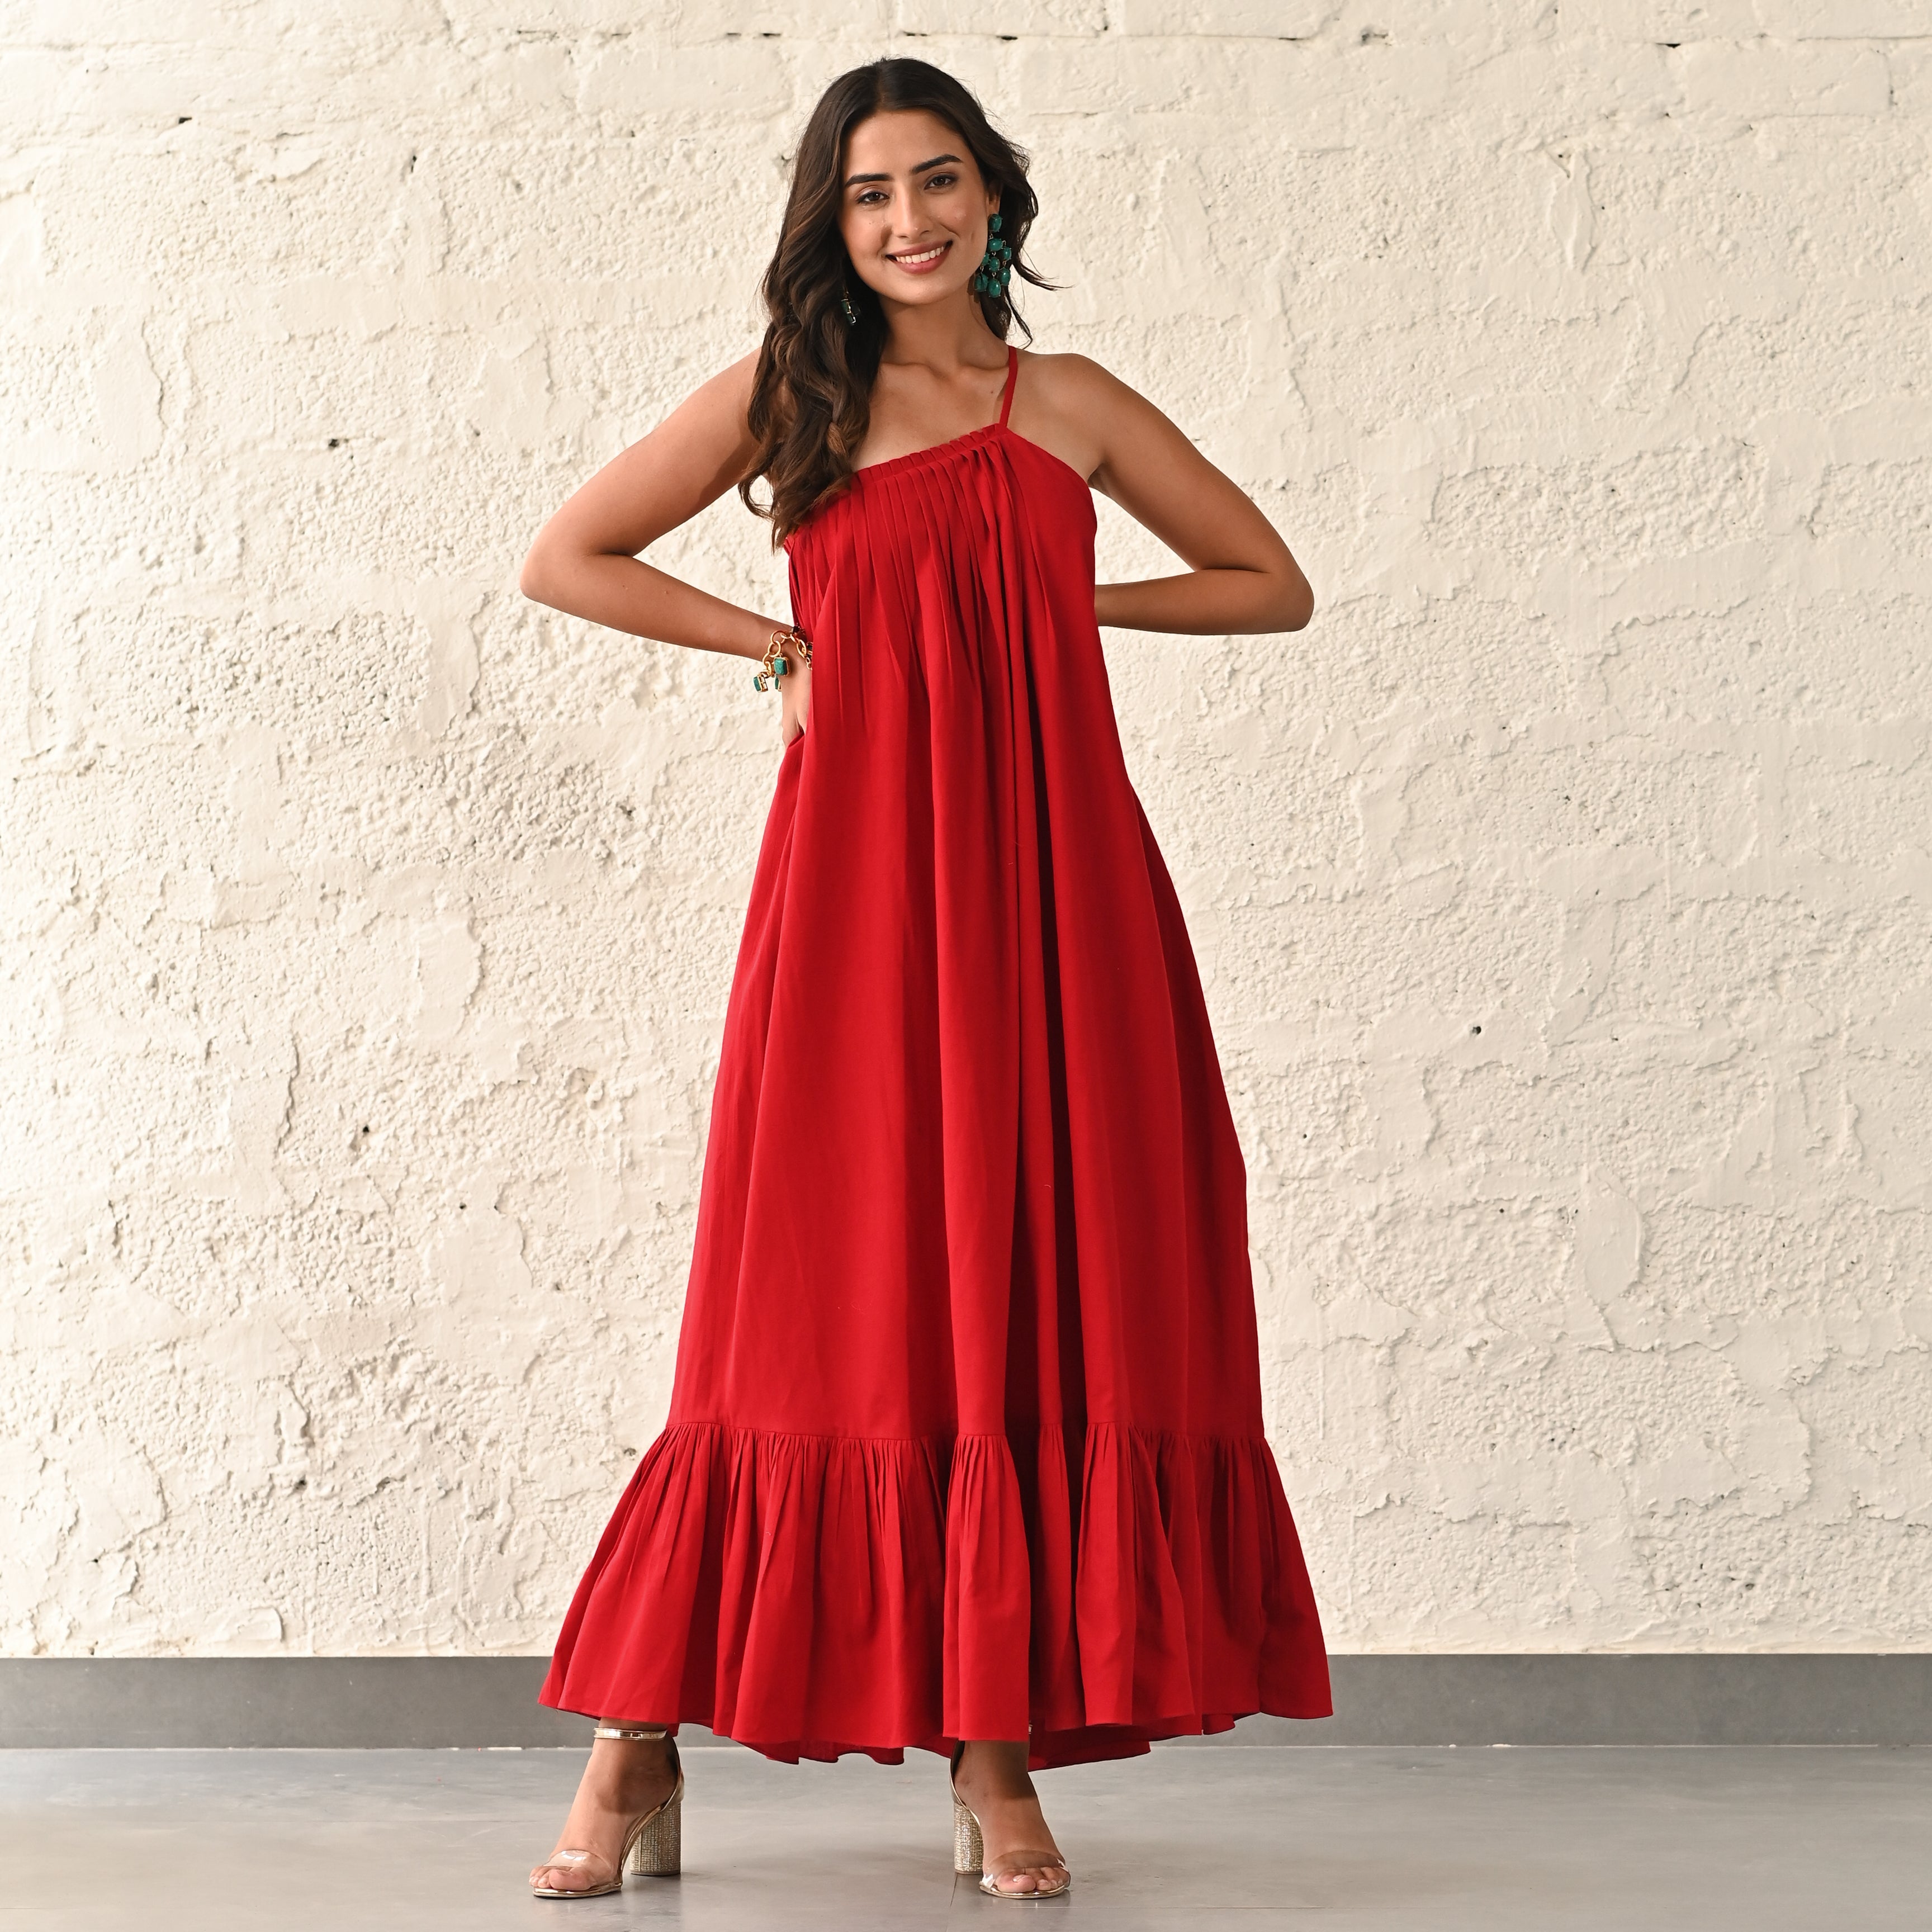  Current Red Designer Long Dress For Women Online